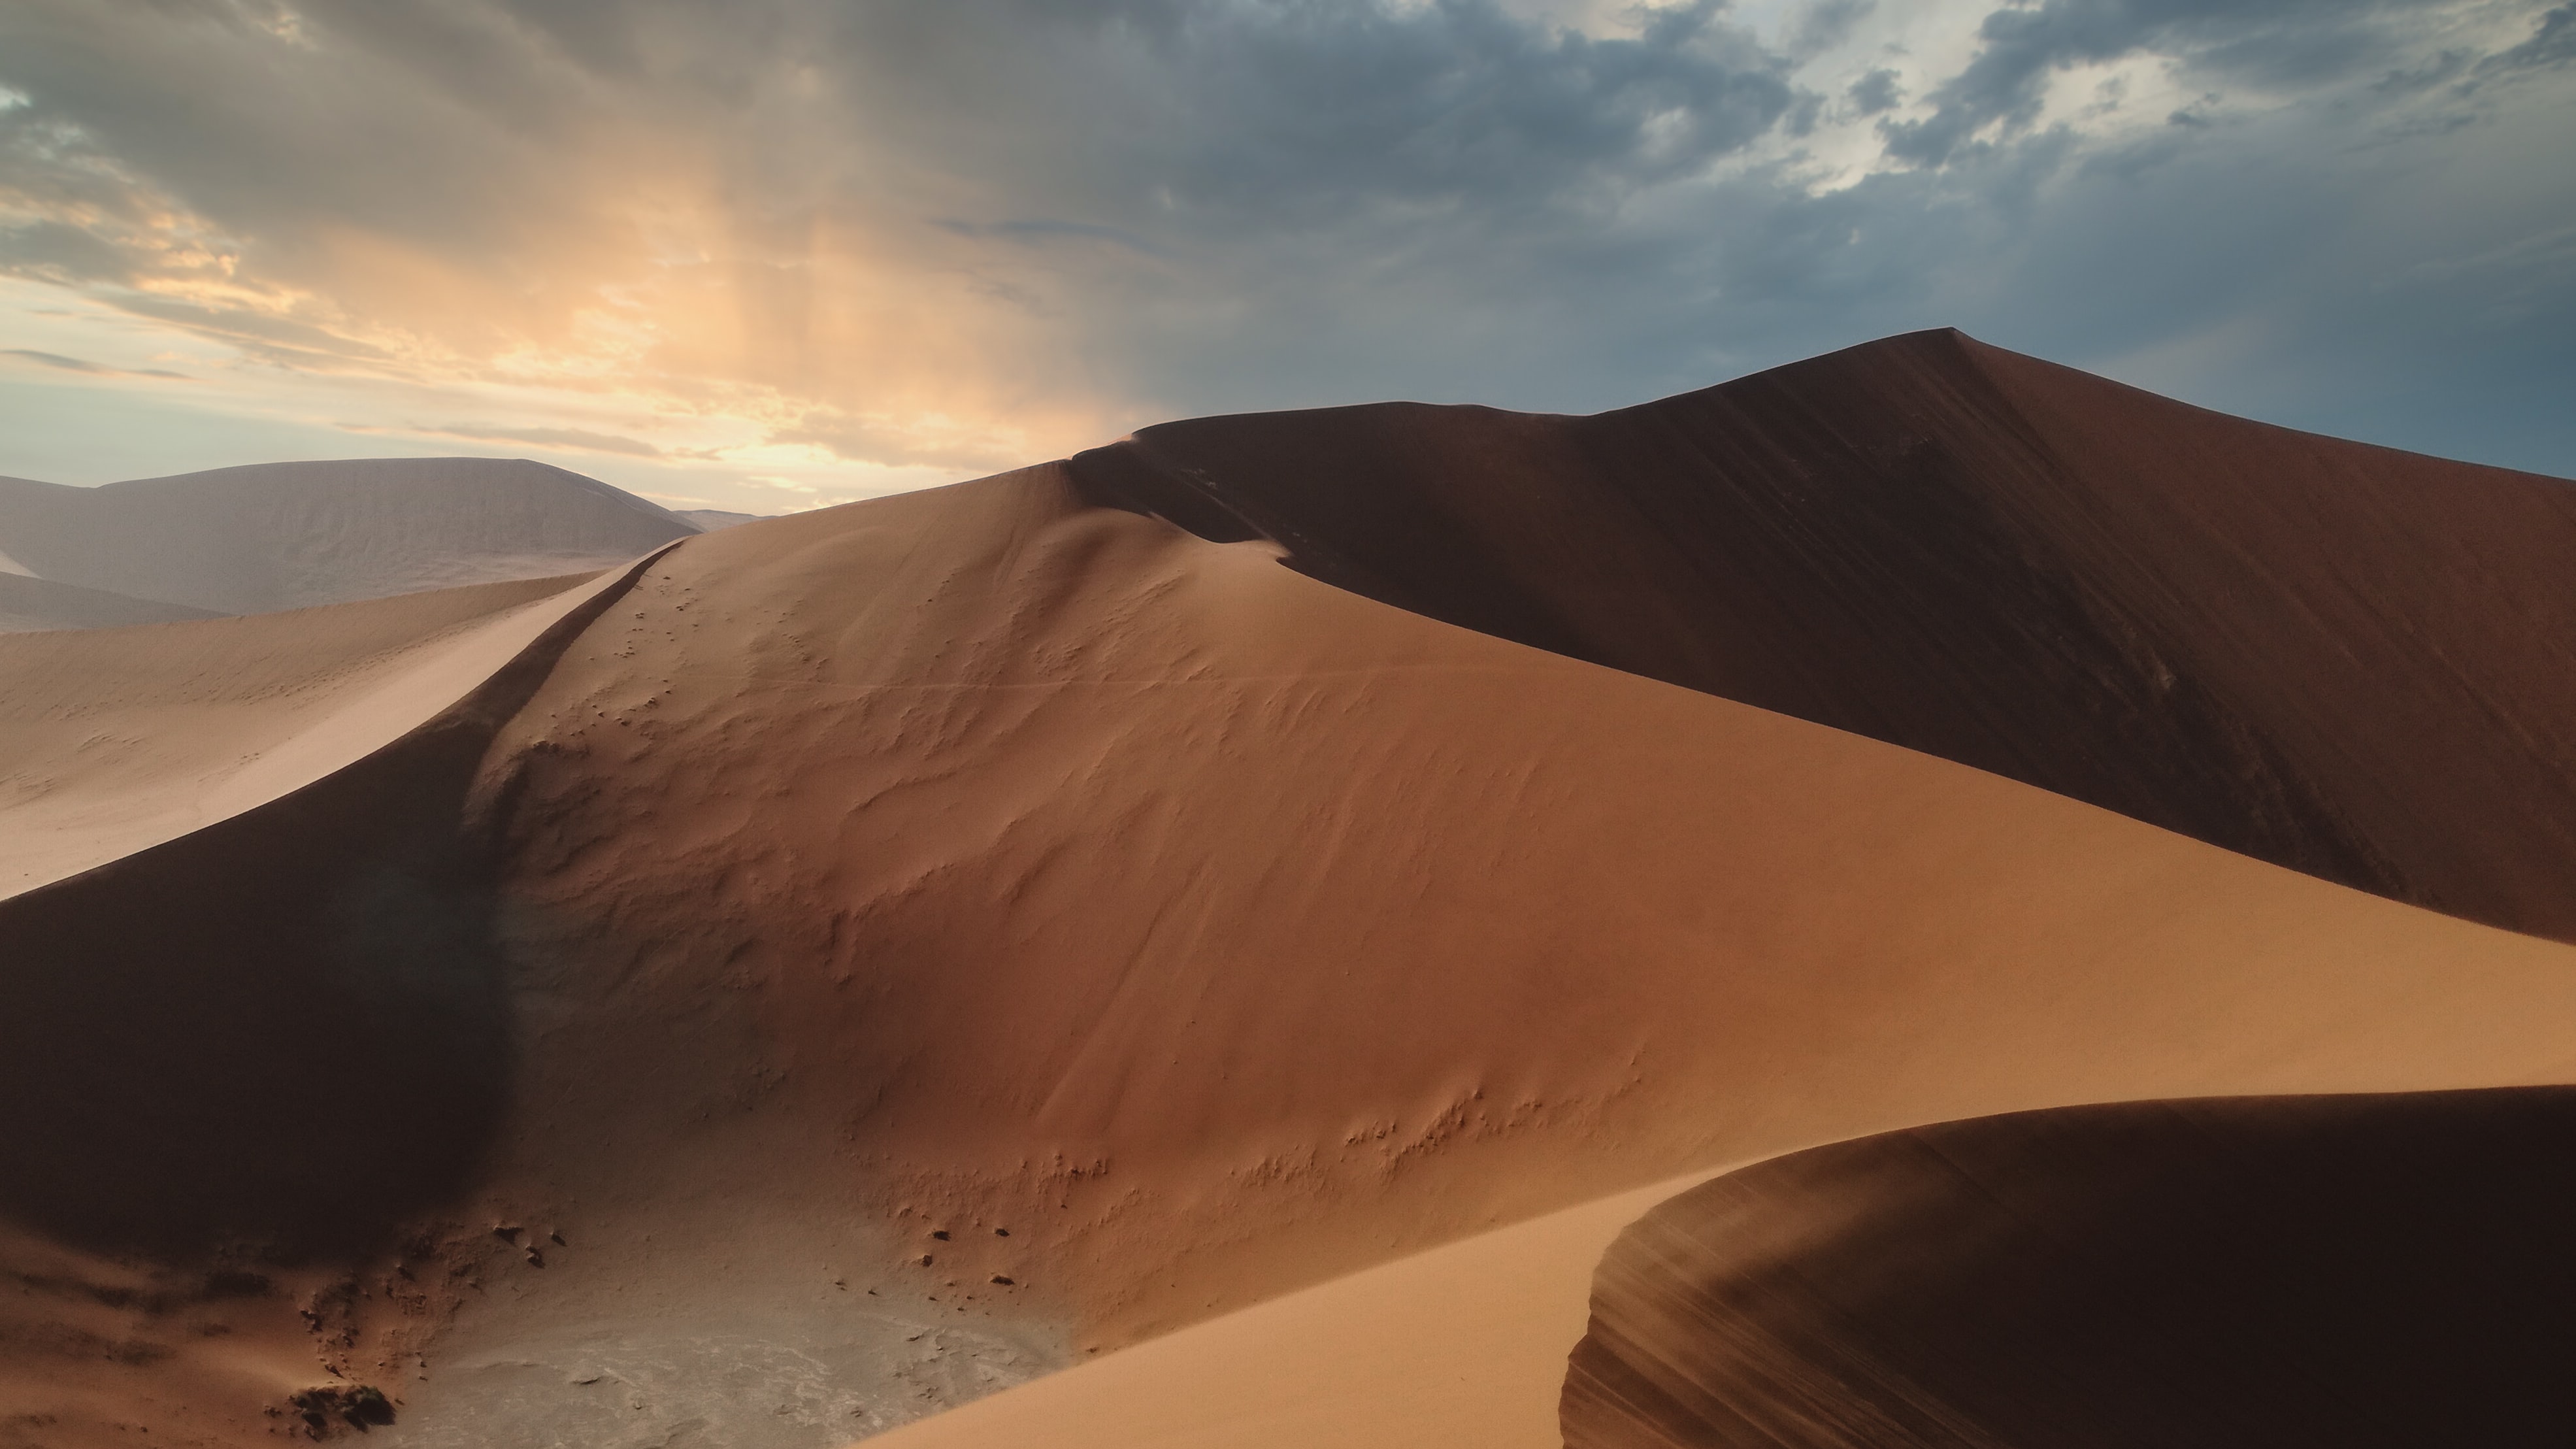 Video Game Dune Awakening 4k Ultra HD Wallpaper